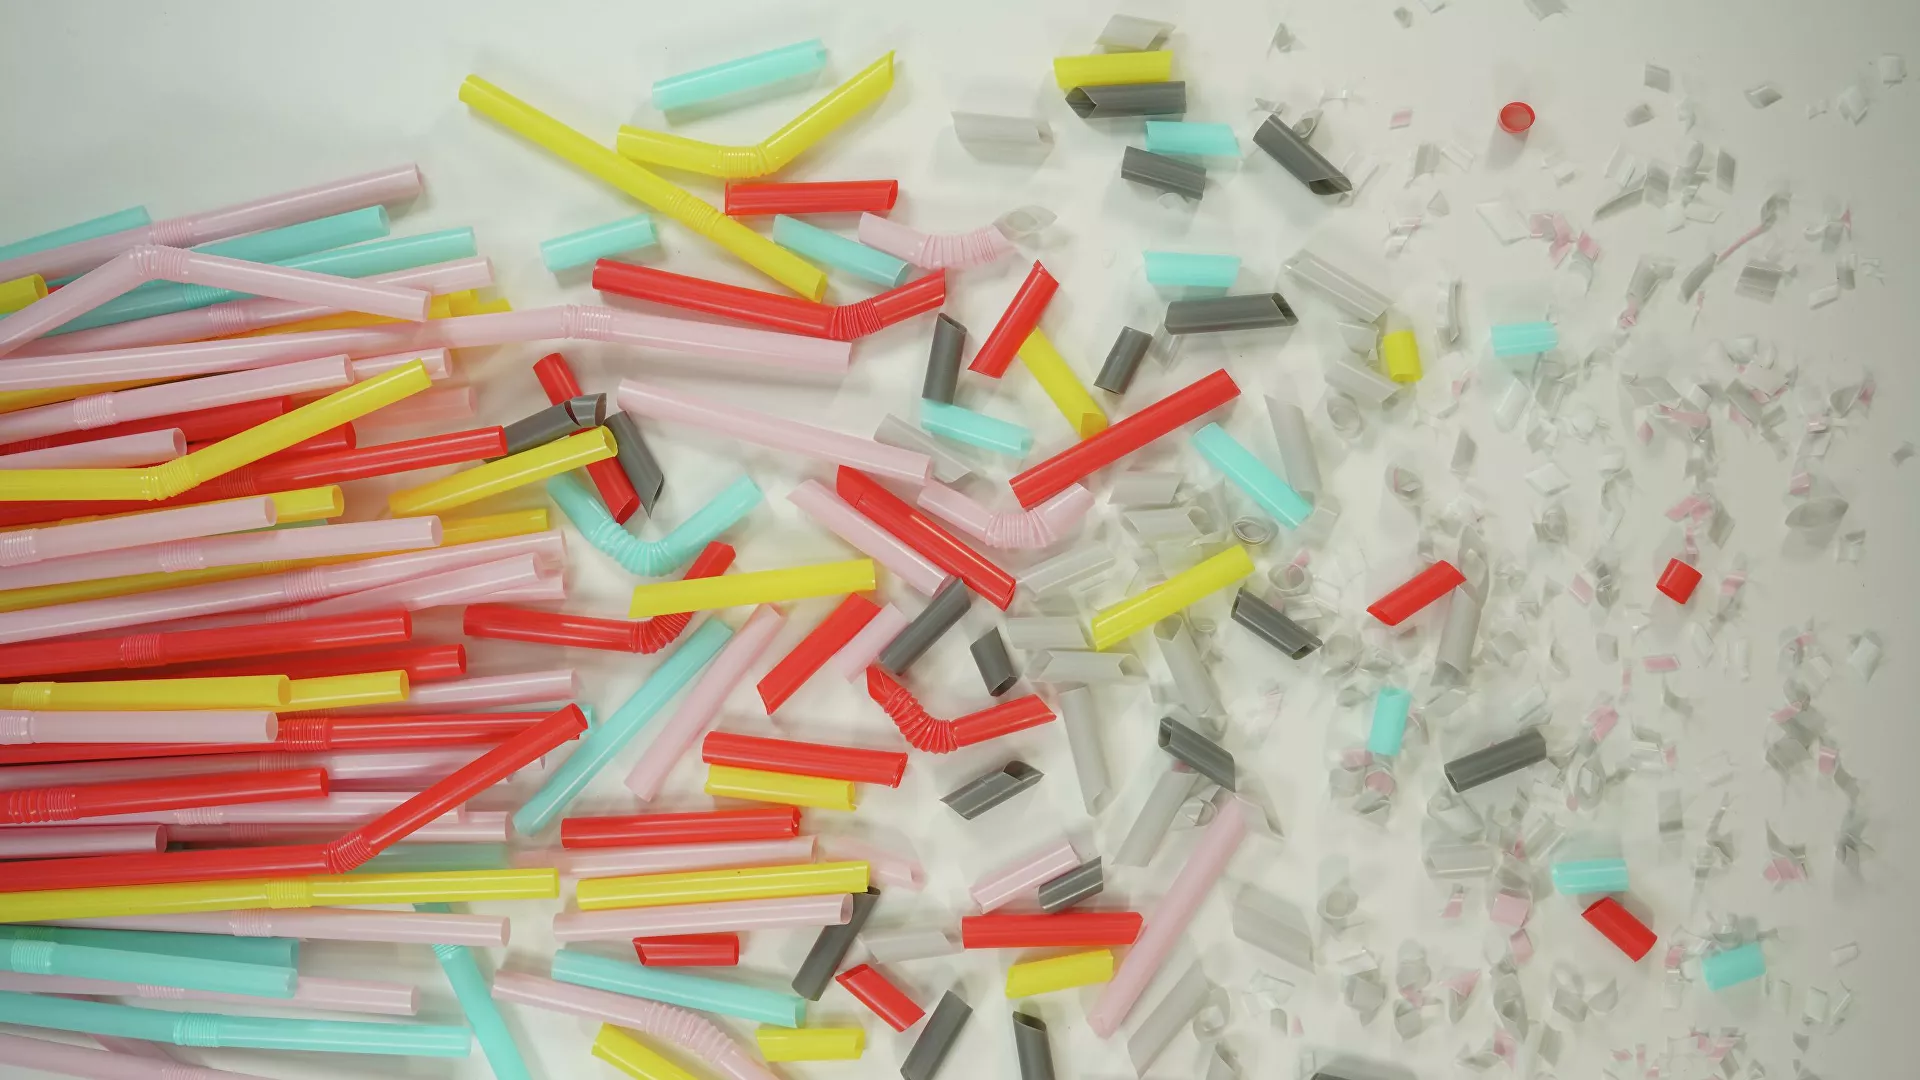  Científicos israelíes explican cómo microplásticos dañan la salud